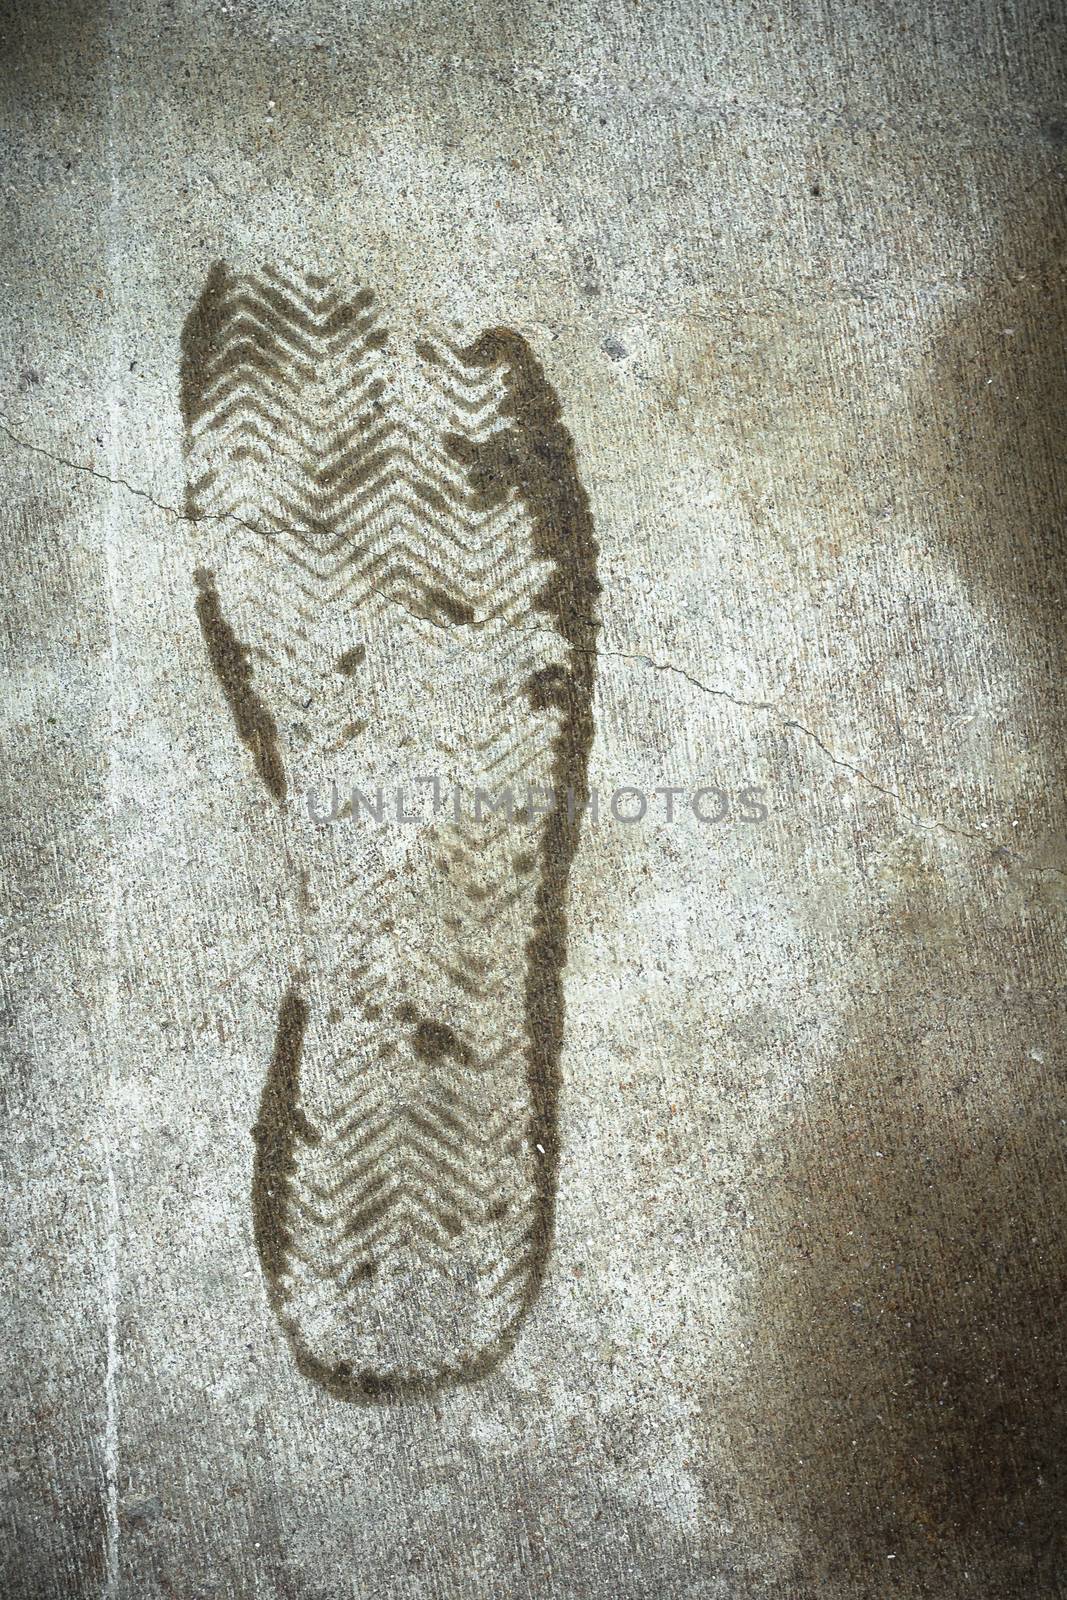 Footprint by germanopoli